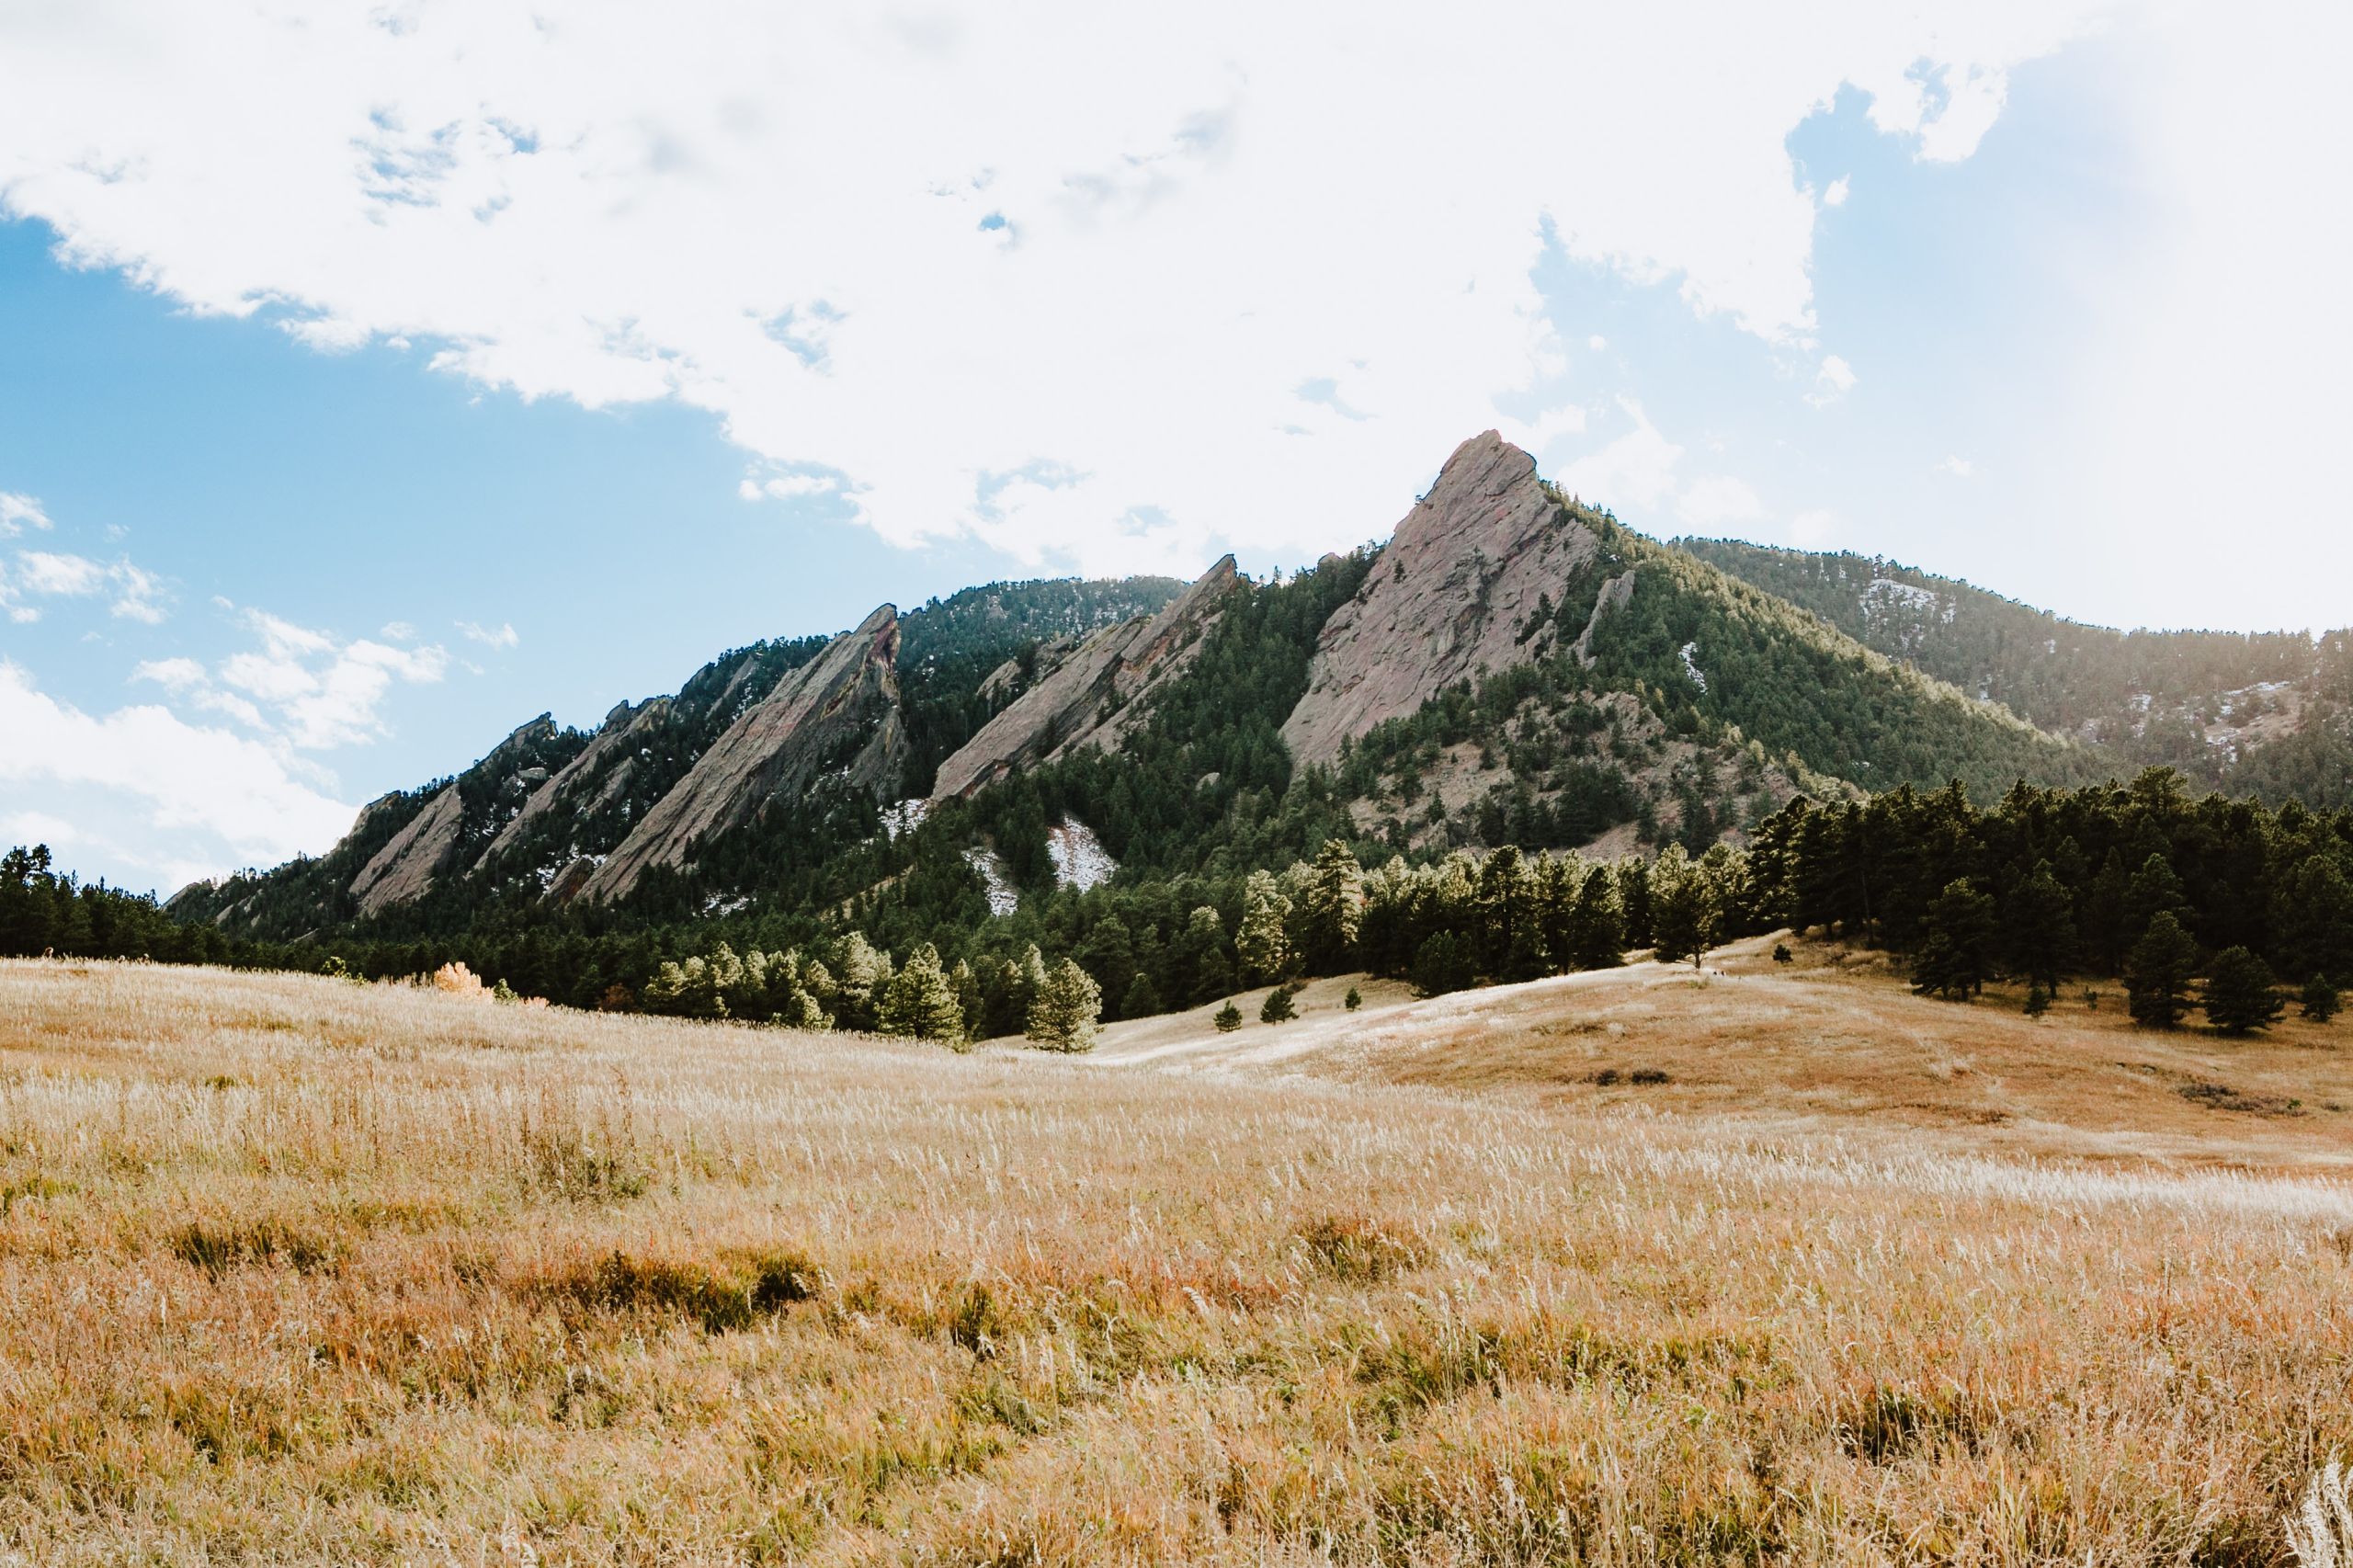 Mountains in Boulder, Colorado, USA